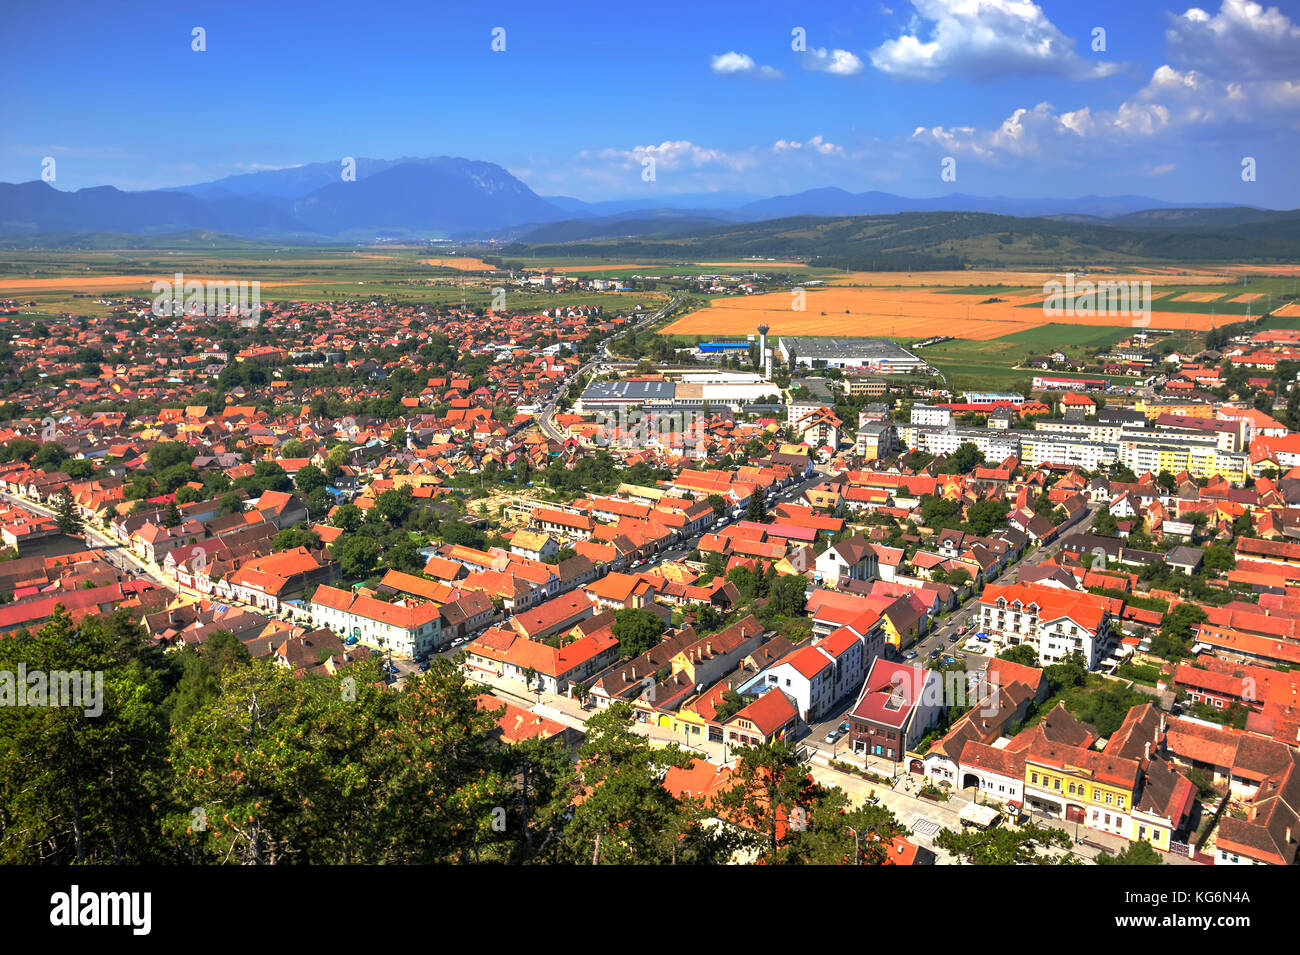 Aerial view of Rasnov city, Brasov county, Romania Stock Photo